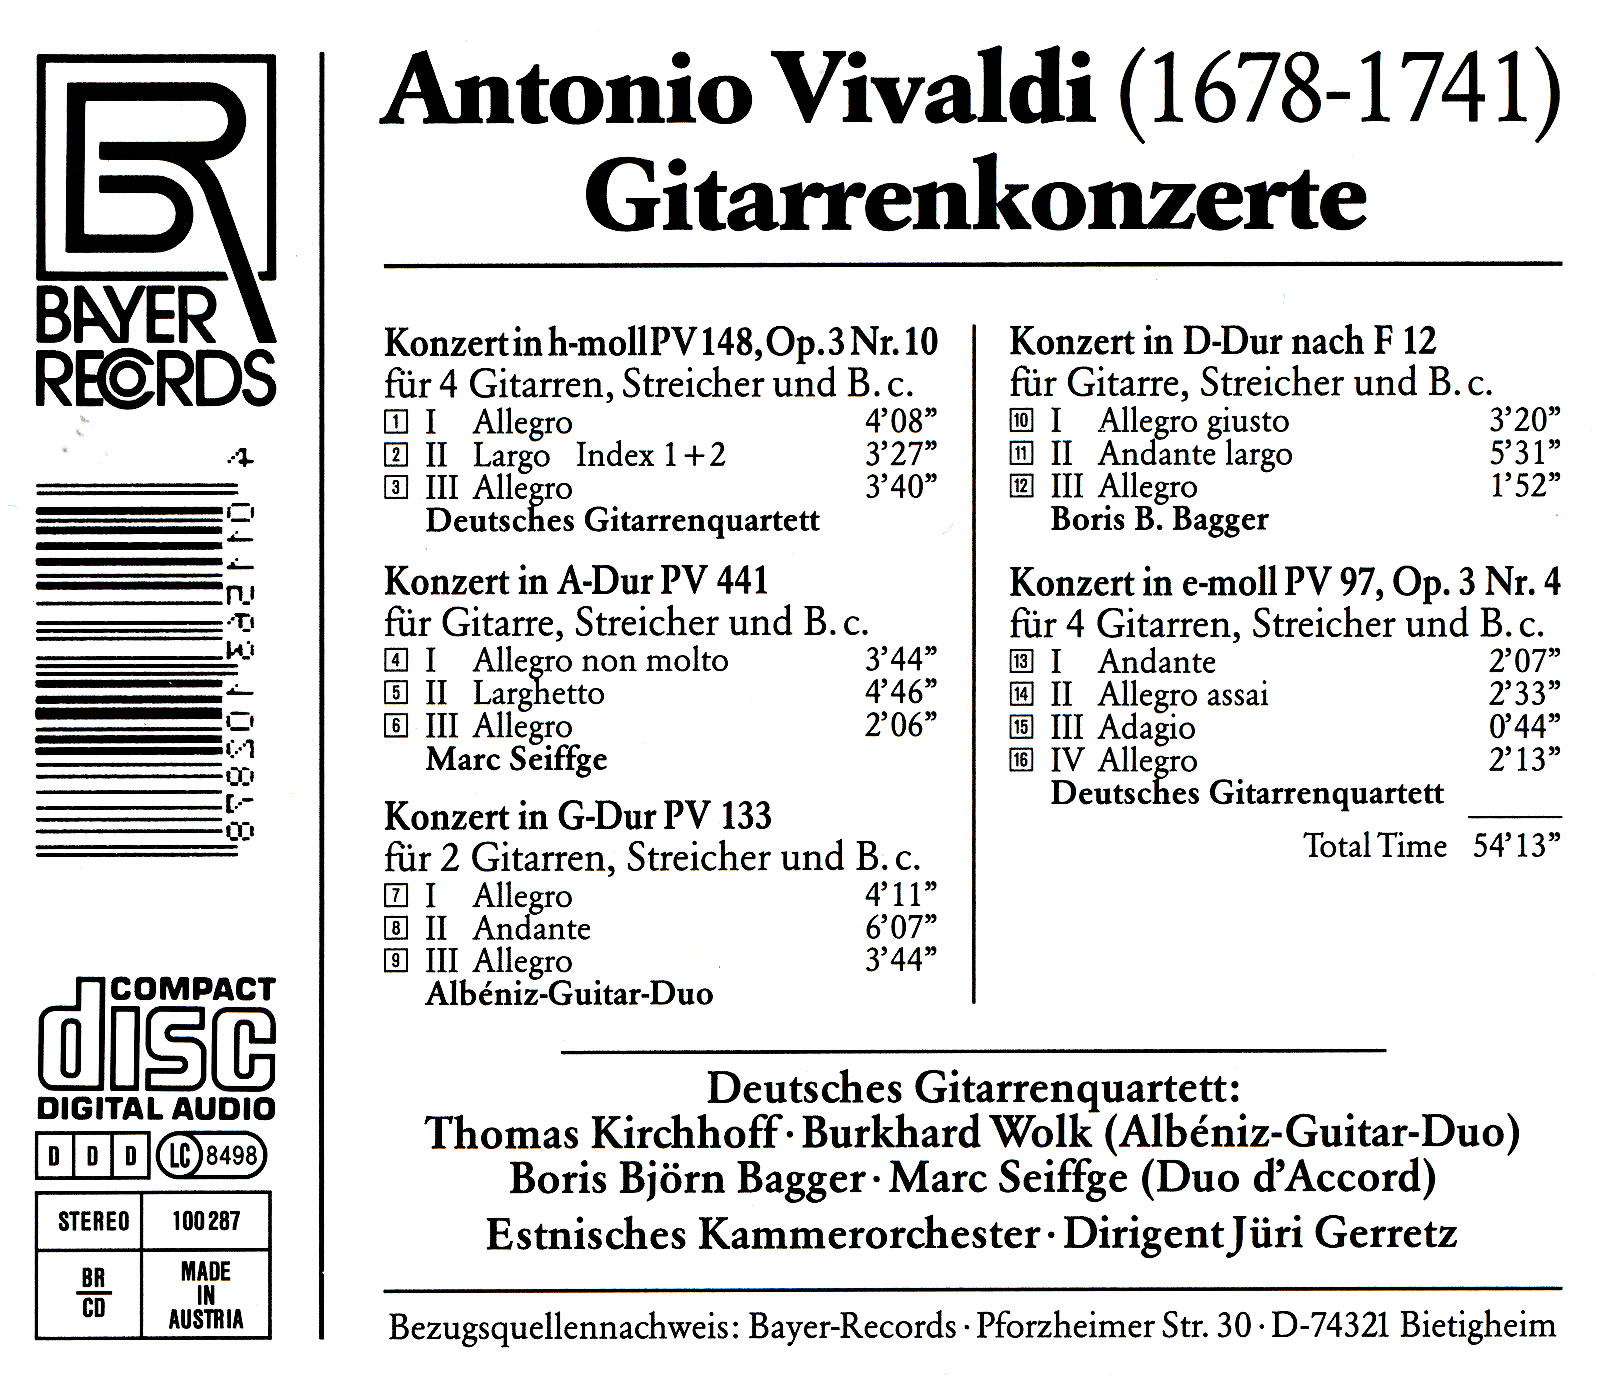 Antonio Vivaldi - Gitarrenkonzerte